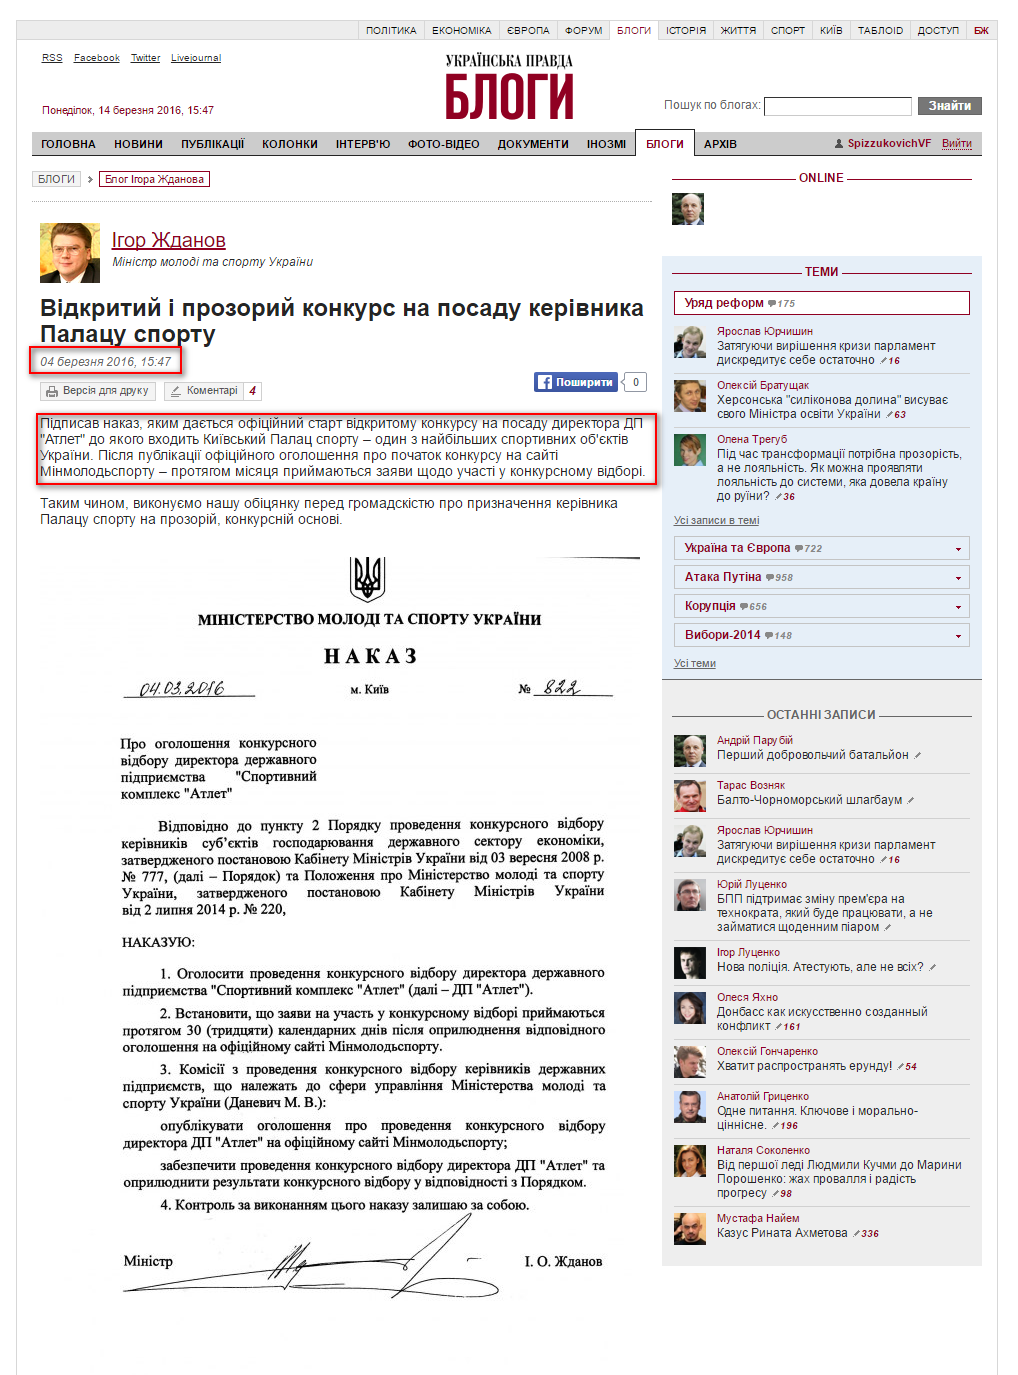 http://blogs.pravda.com.ua/authors/zhdanov/56d991f4d3ee0/